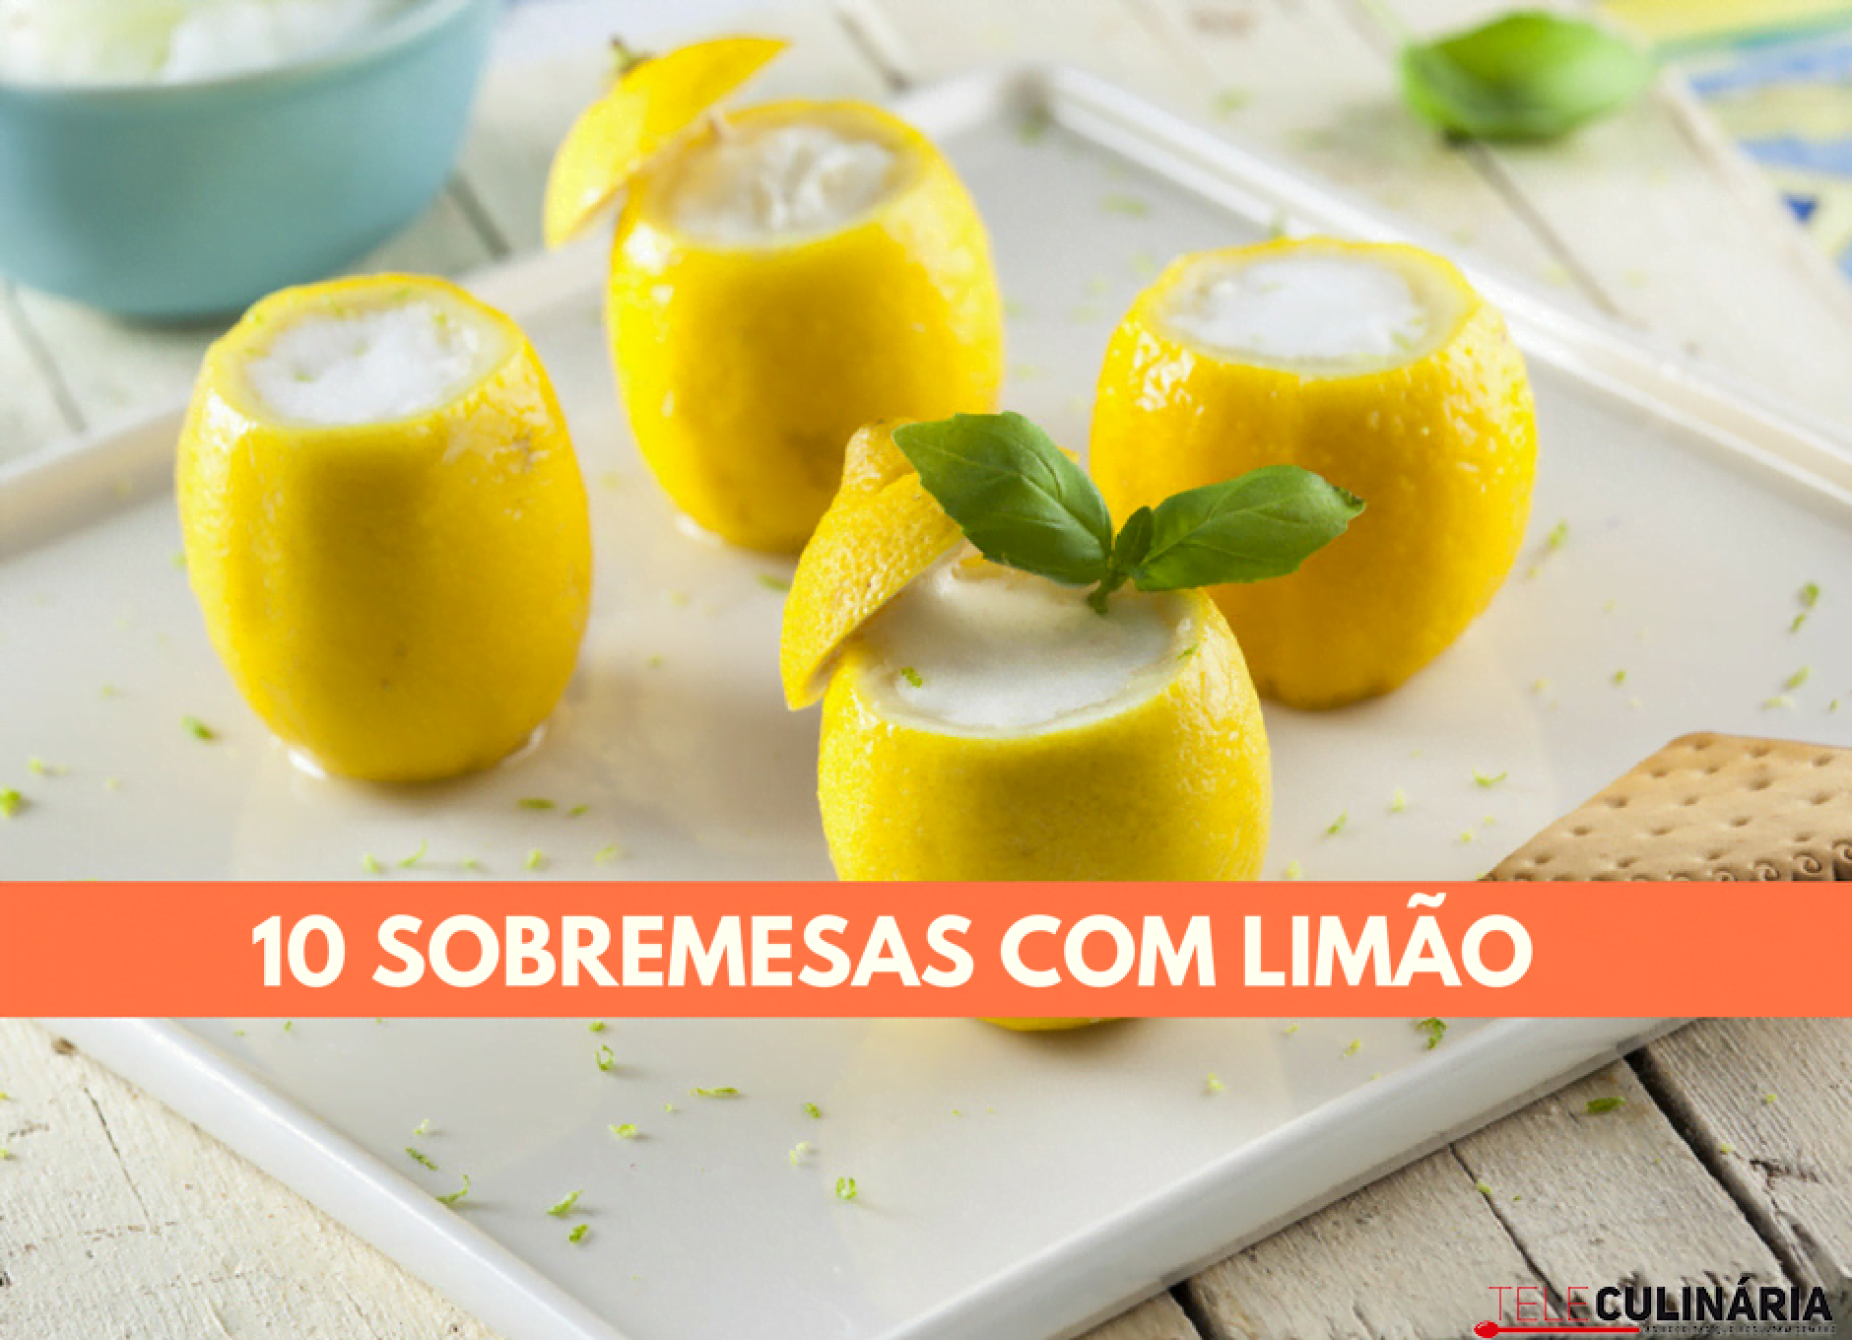 10 sobremesas com limão